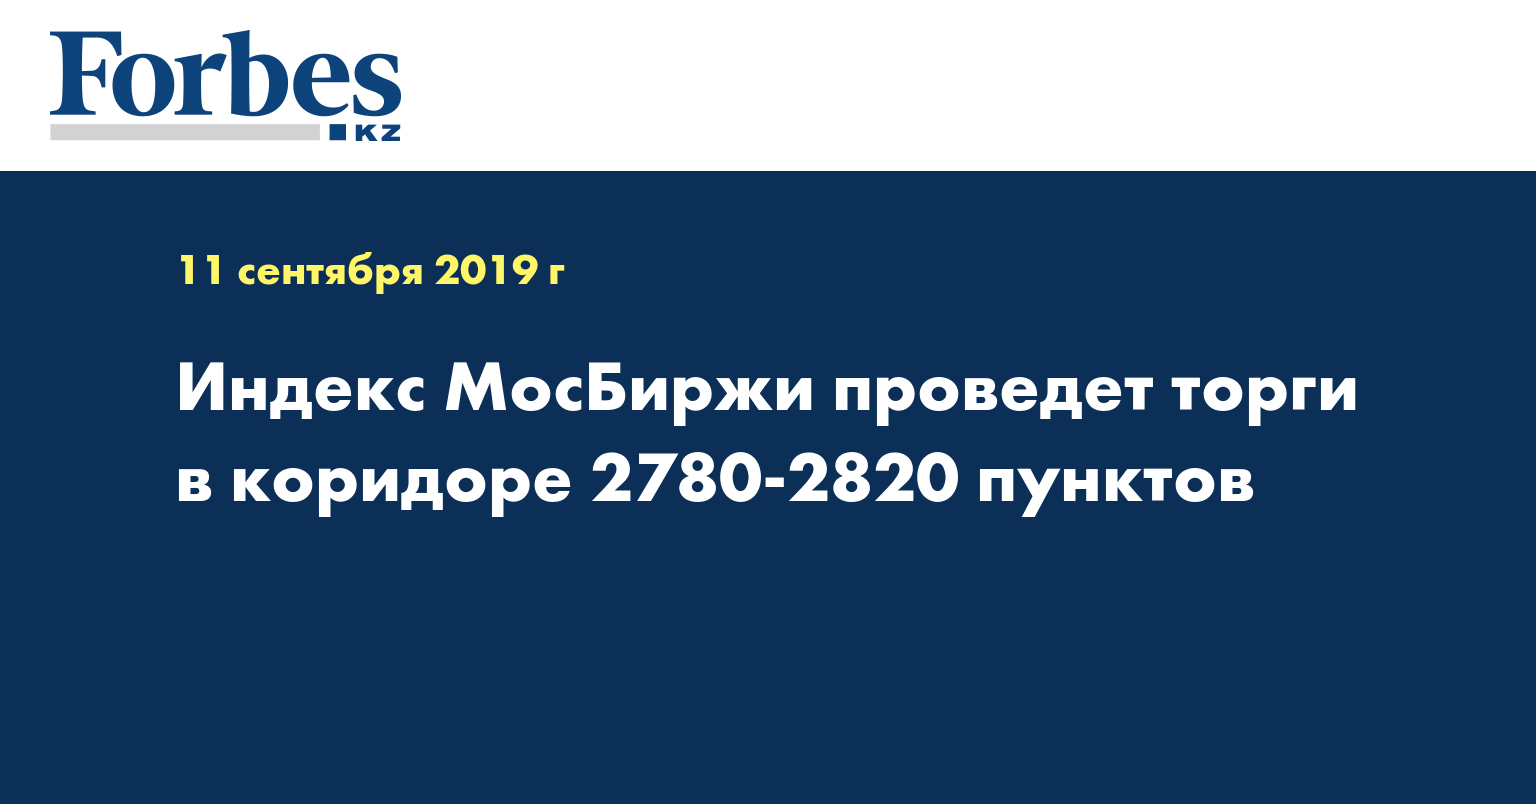 Индекс МосБиржи проведет торги в коридоре 2780-2820 пунктов